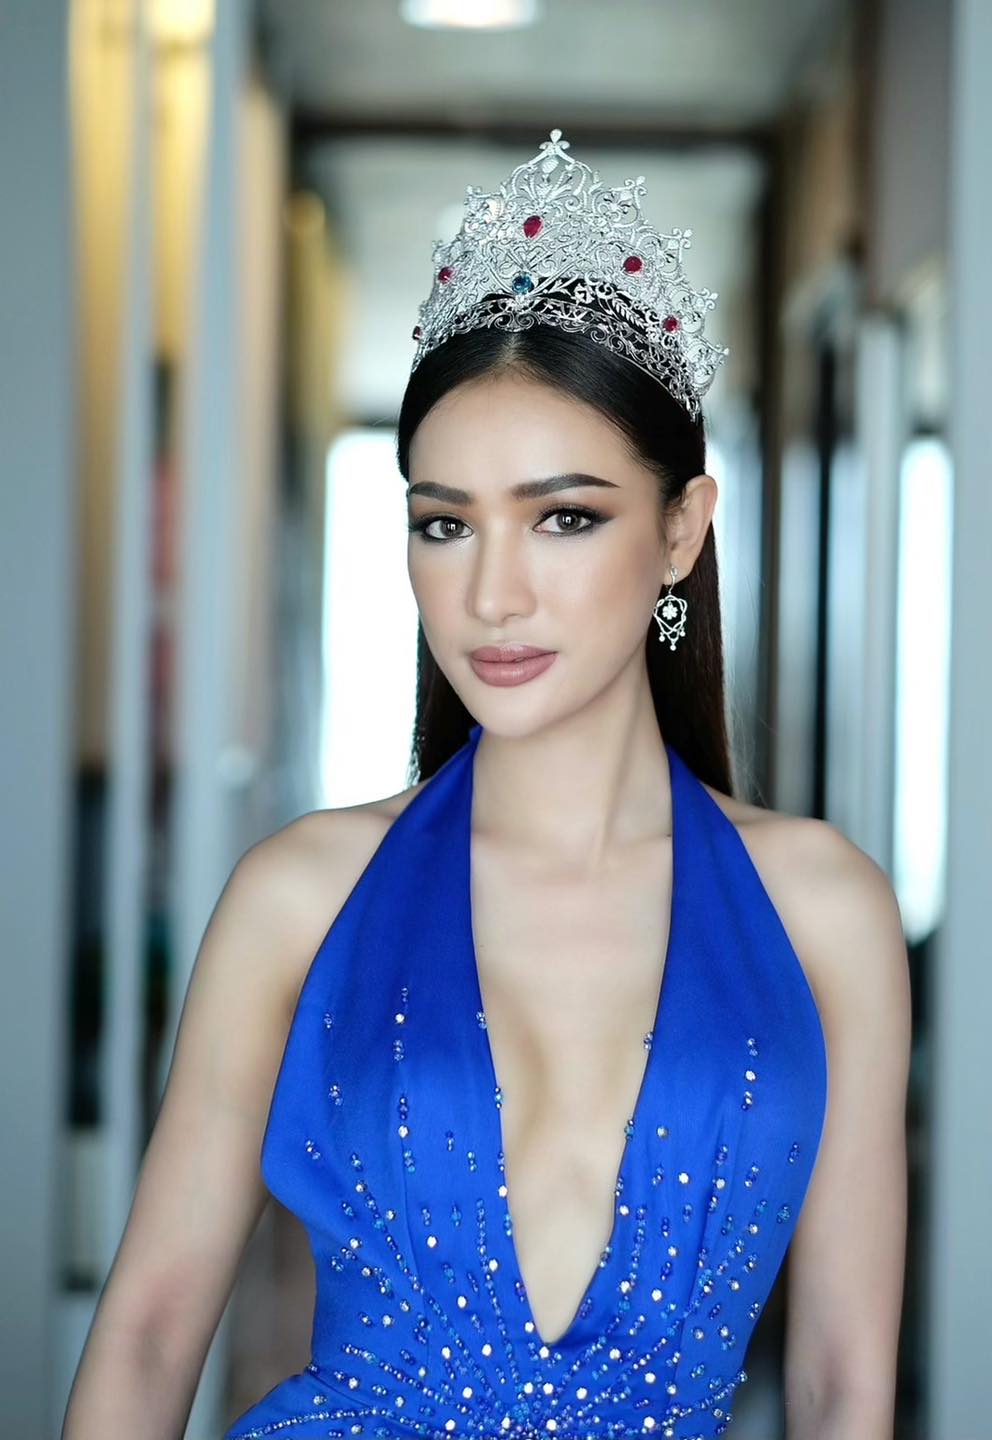 Tân Hoa hậu Hoàn vũ Lào 2021: 3 vòng quyến rũ, làm Giám đốc ở tuổi 26, biết nói tiếng Việt - Ảnh 8